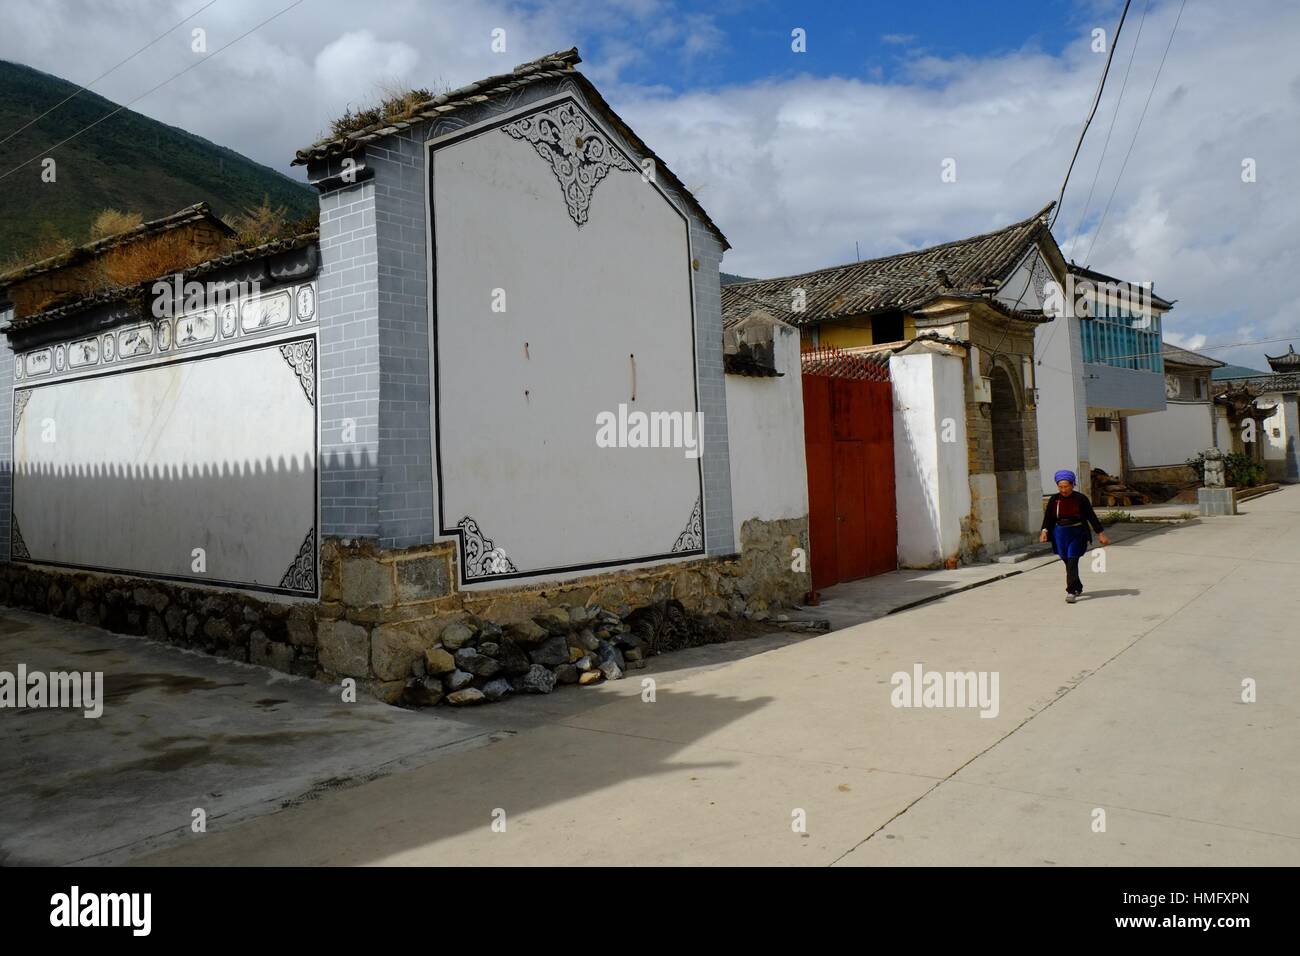 Caratteristica architetturale circa della Minoranza Bai, Dali, nella provincia dello Yunnan in Cina Foto Stock